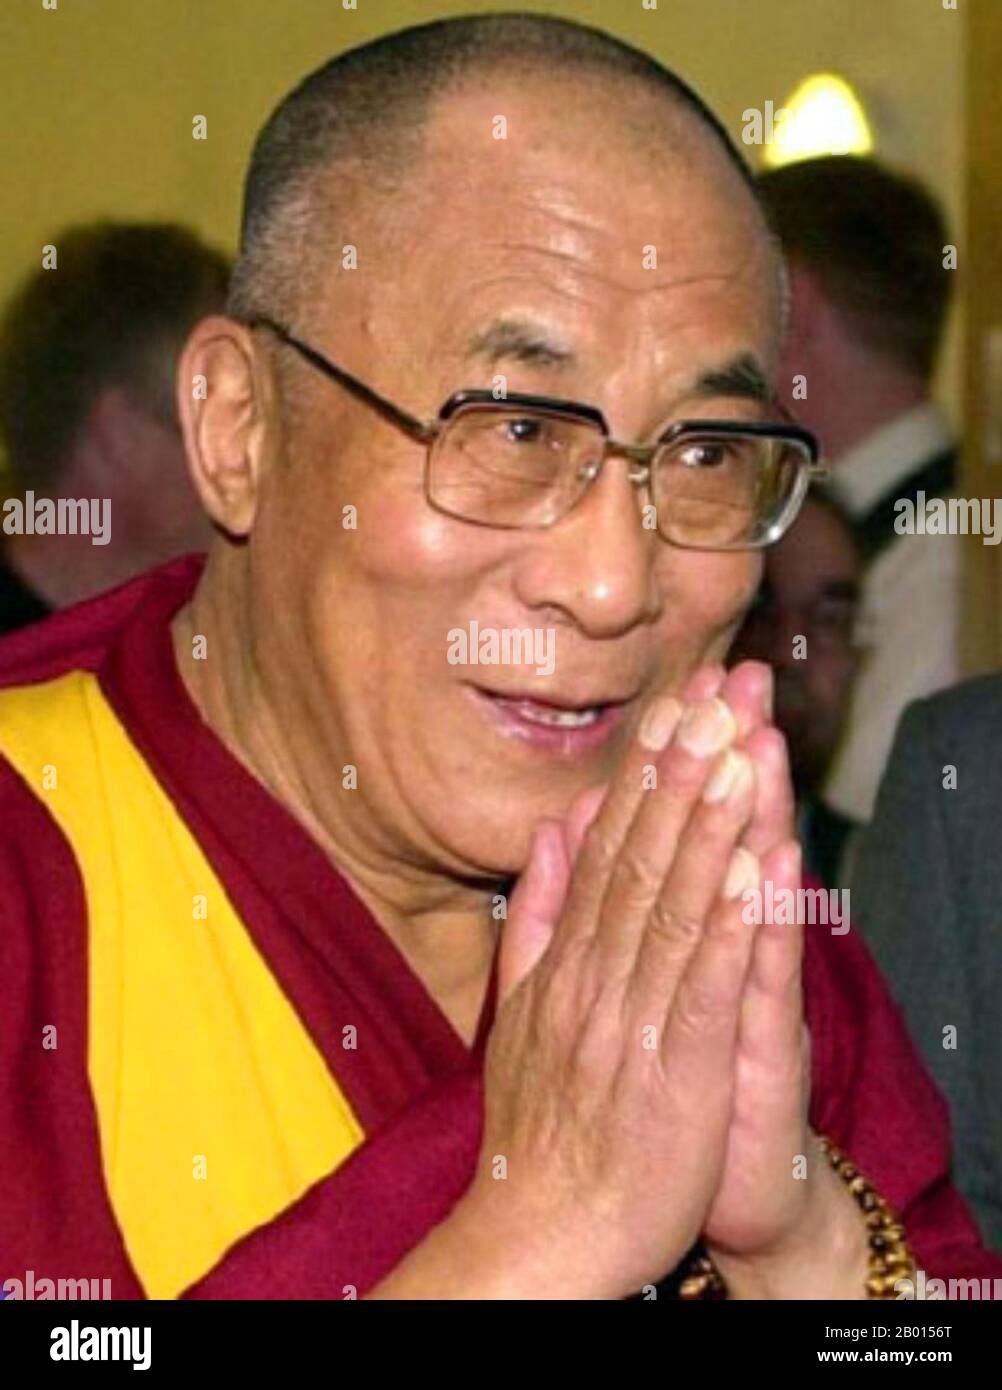 Cina/Tibet/India: Il XIV Dalai lama, Tenzin Gyatso (6 luglio 1935), XXI secolo. Il XIV Dalai lama (nome religioso: Tenzin Gyatso, abbreviato da Jetsun Jamphel Ngawang Lobsang Yeshe Tenzin Gyatso, nato Lhamo Dondrub) è il XIV e attuale Dalai lama. I Dalai Lamas sono la figura più influente nella linea Gelugpa del Buddismo Tibetano, anche se il 14 ha consolidato il controllo sulle altre linee negli ultimi anni. Ha vinto il Premio Nobel per la pace nel 1989 ed è noto anche per la sua difesa permanente per i tibetani all'interno e all'esterno del Tibet. Foto Stock